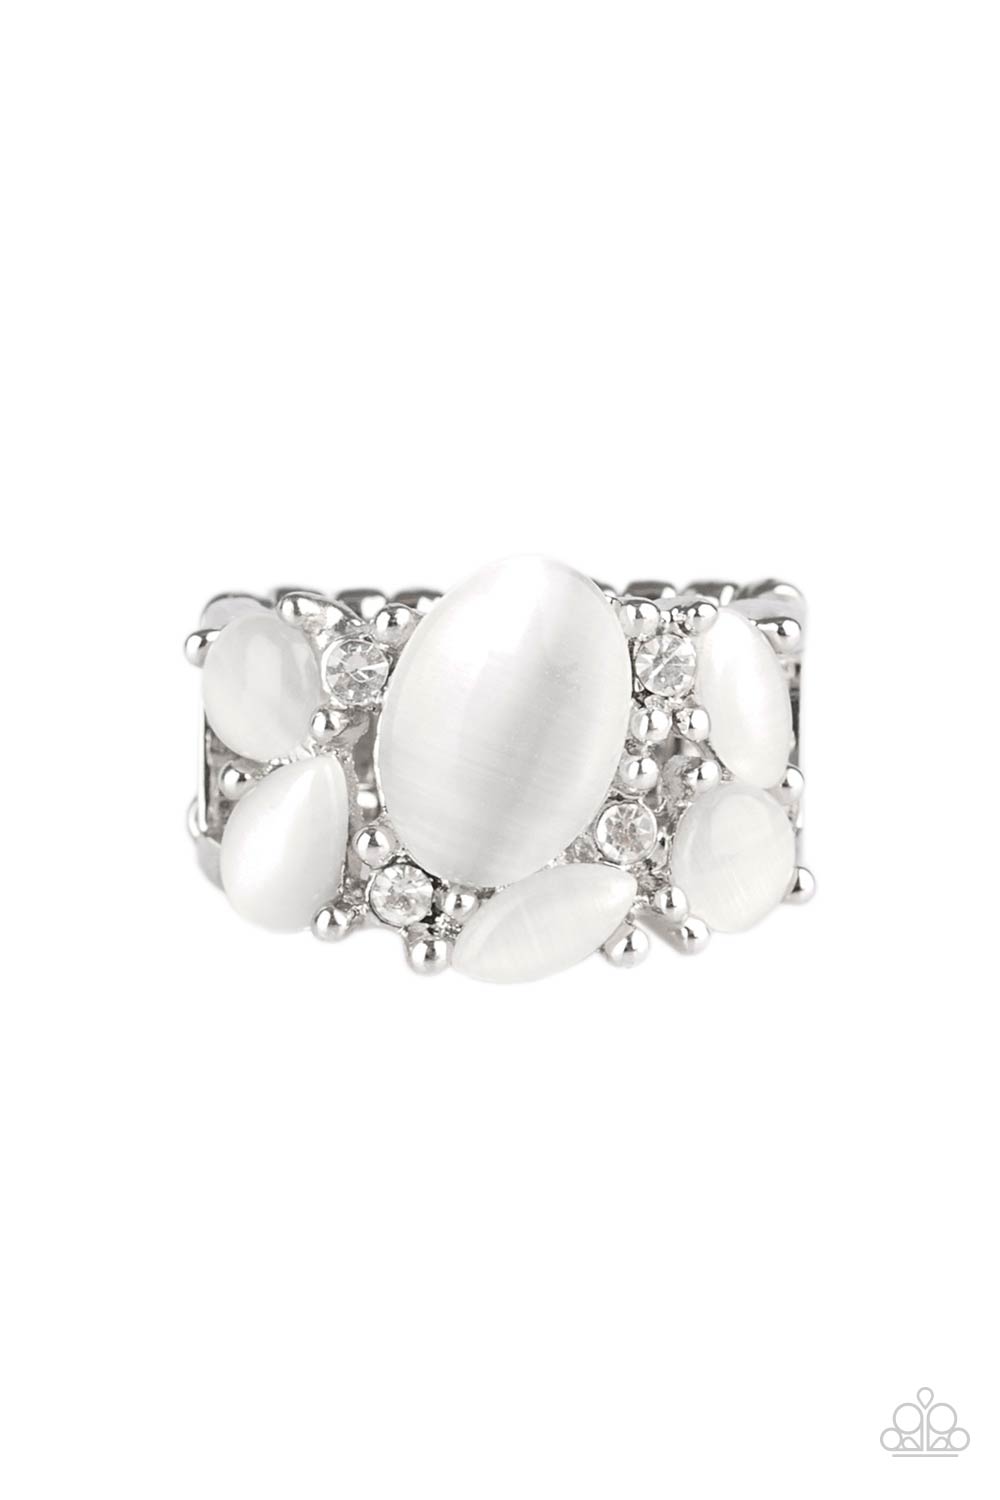 Modern Moonwalk - White Ring - Princess Glam Shop